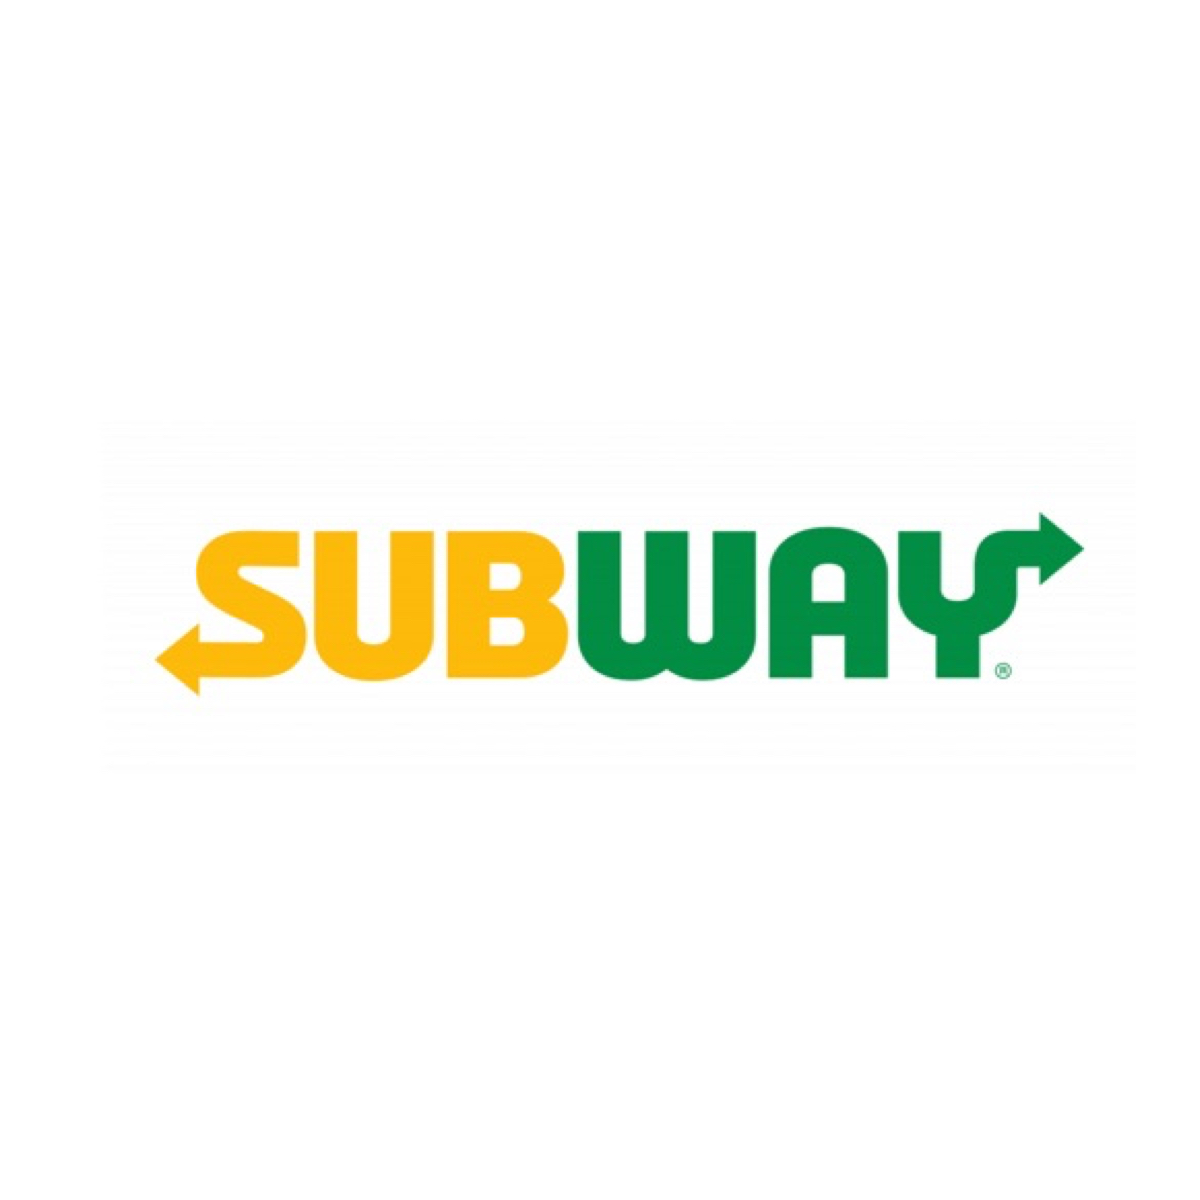 subway shift